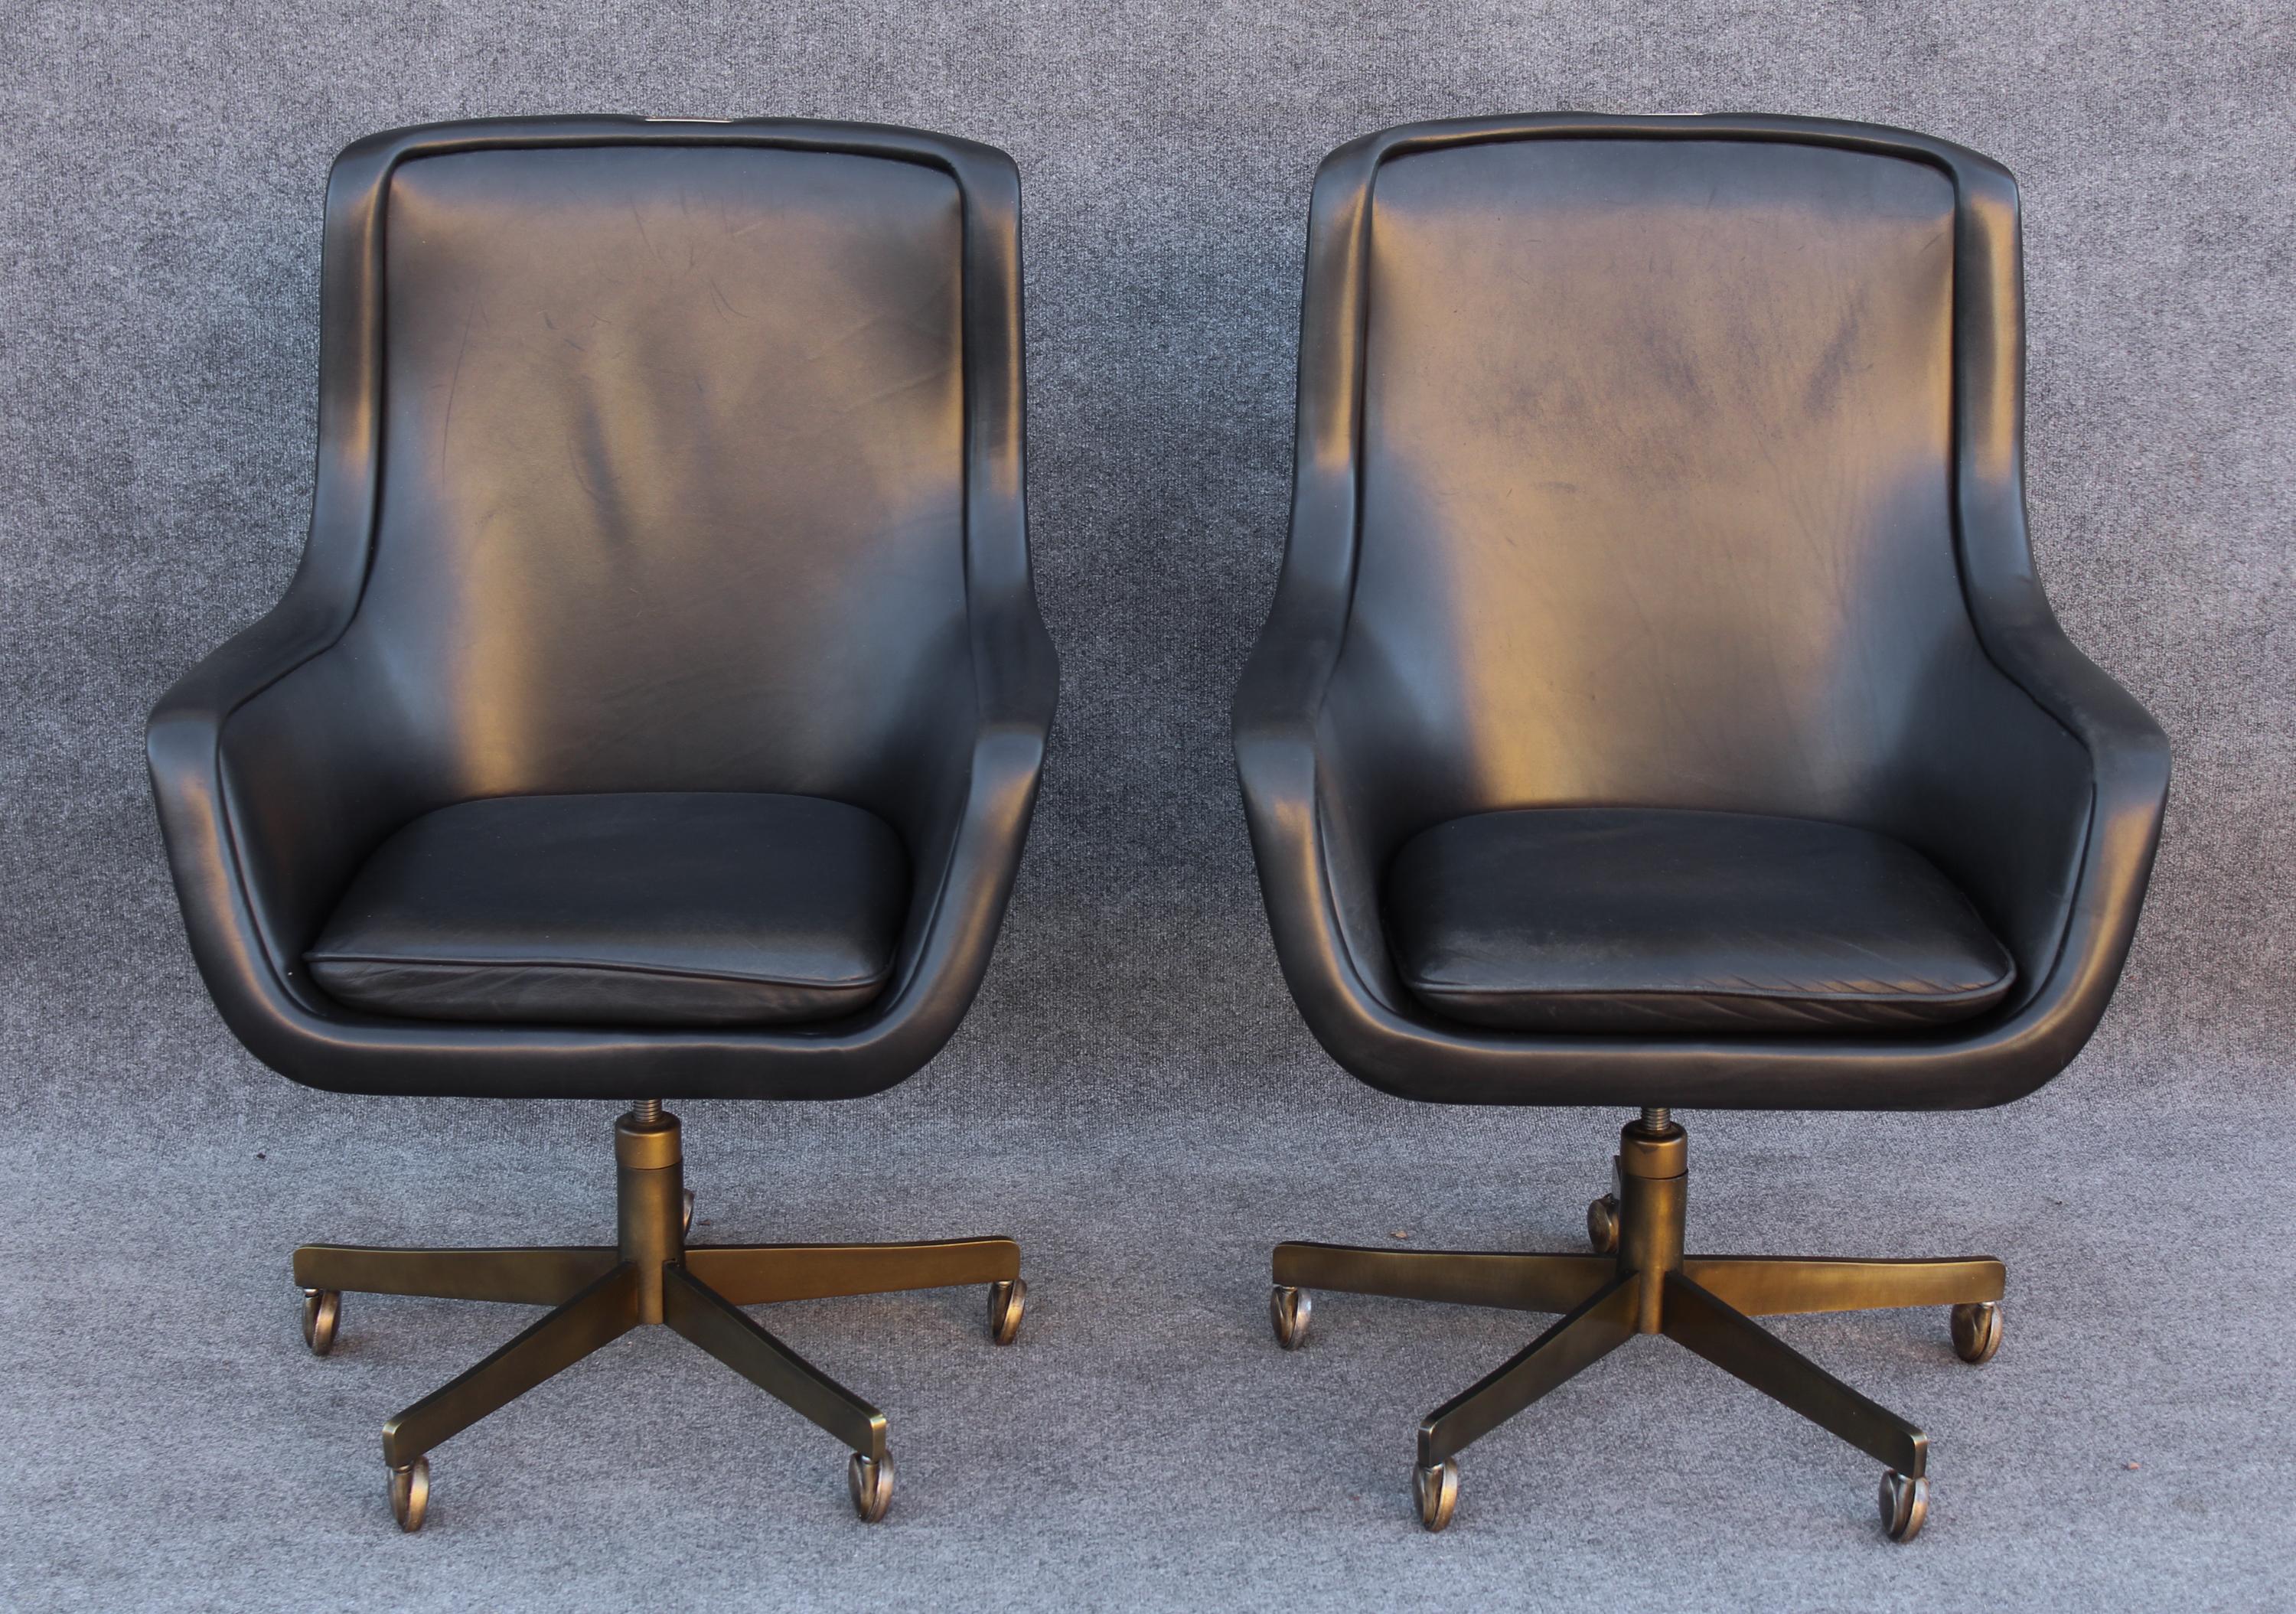 Conçues par la légende du design américain Ward Bennett, ces chaises ont été produites au milieu des années 1980 par la société Brickel Associates, connue pour sa construction américaine et sa qualité exceptionnelle. Il n'existe pas beaucoup de ces